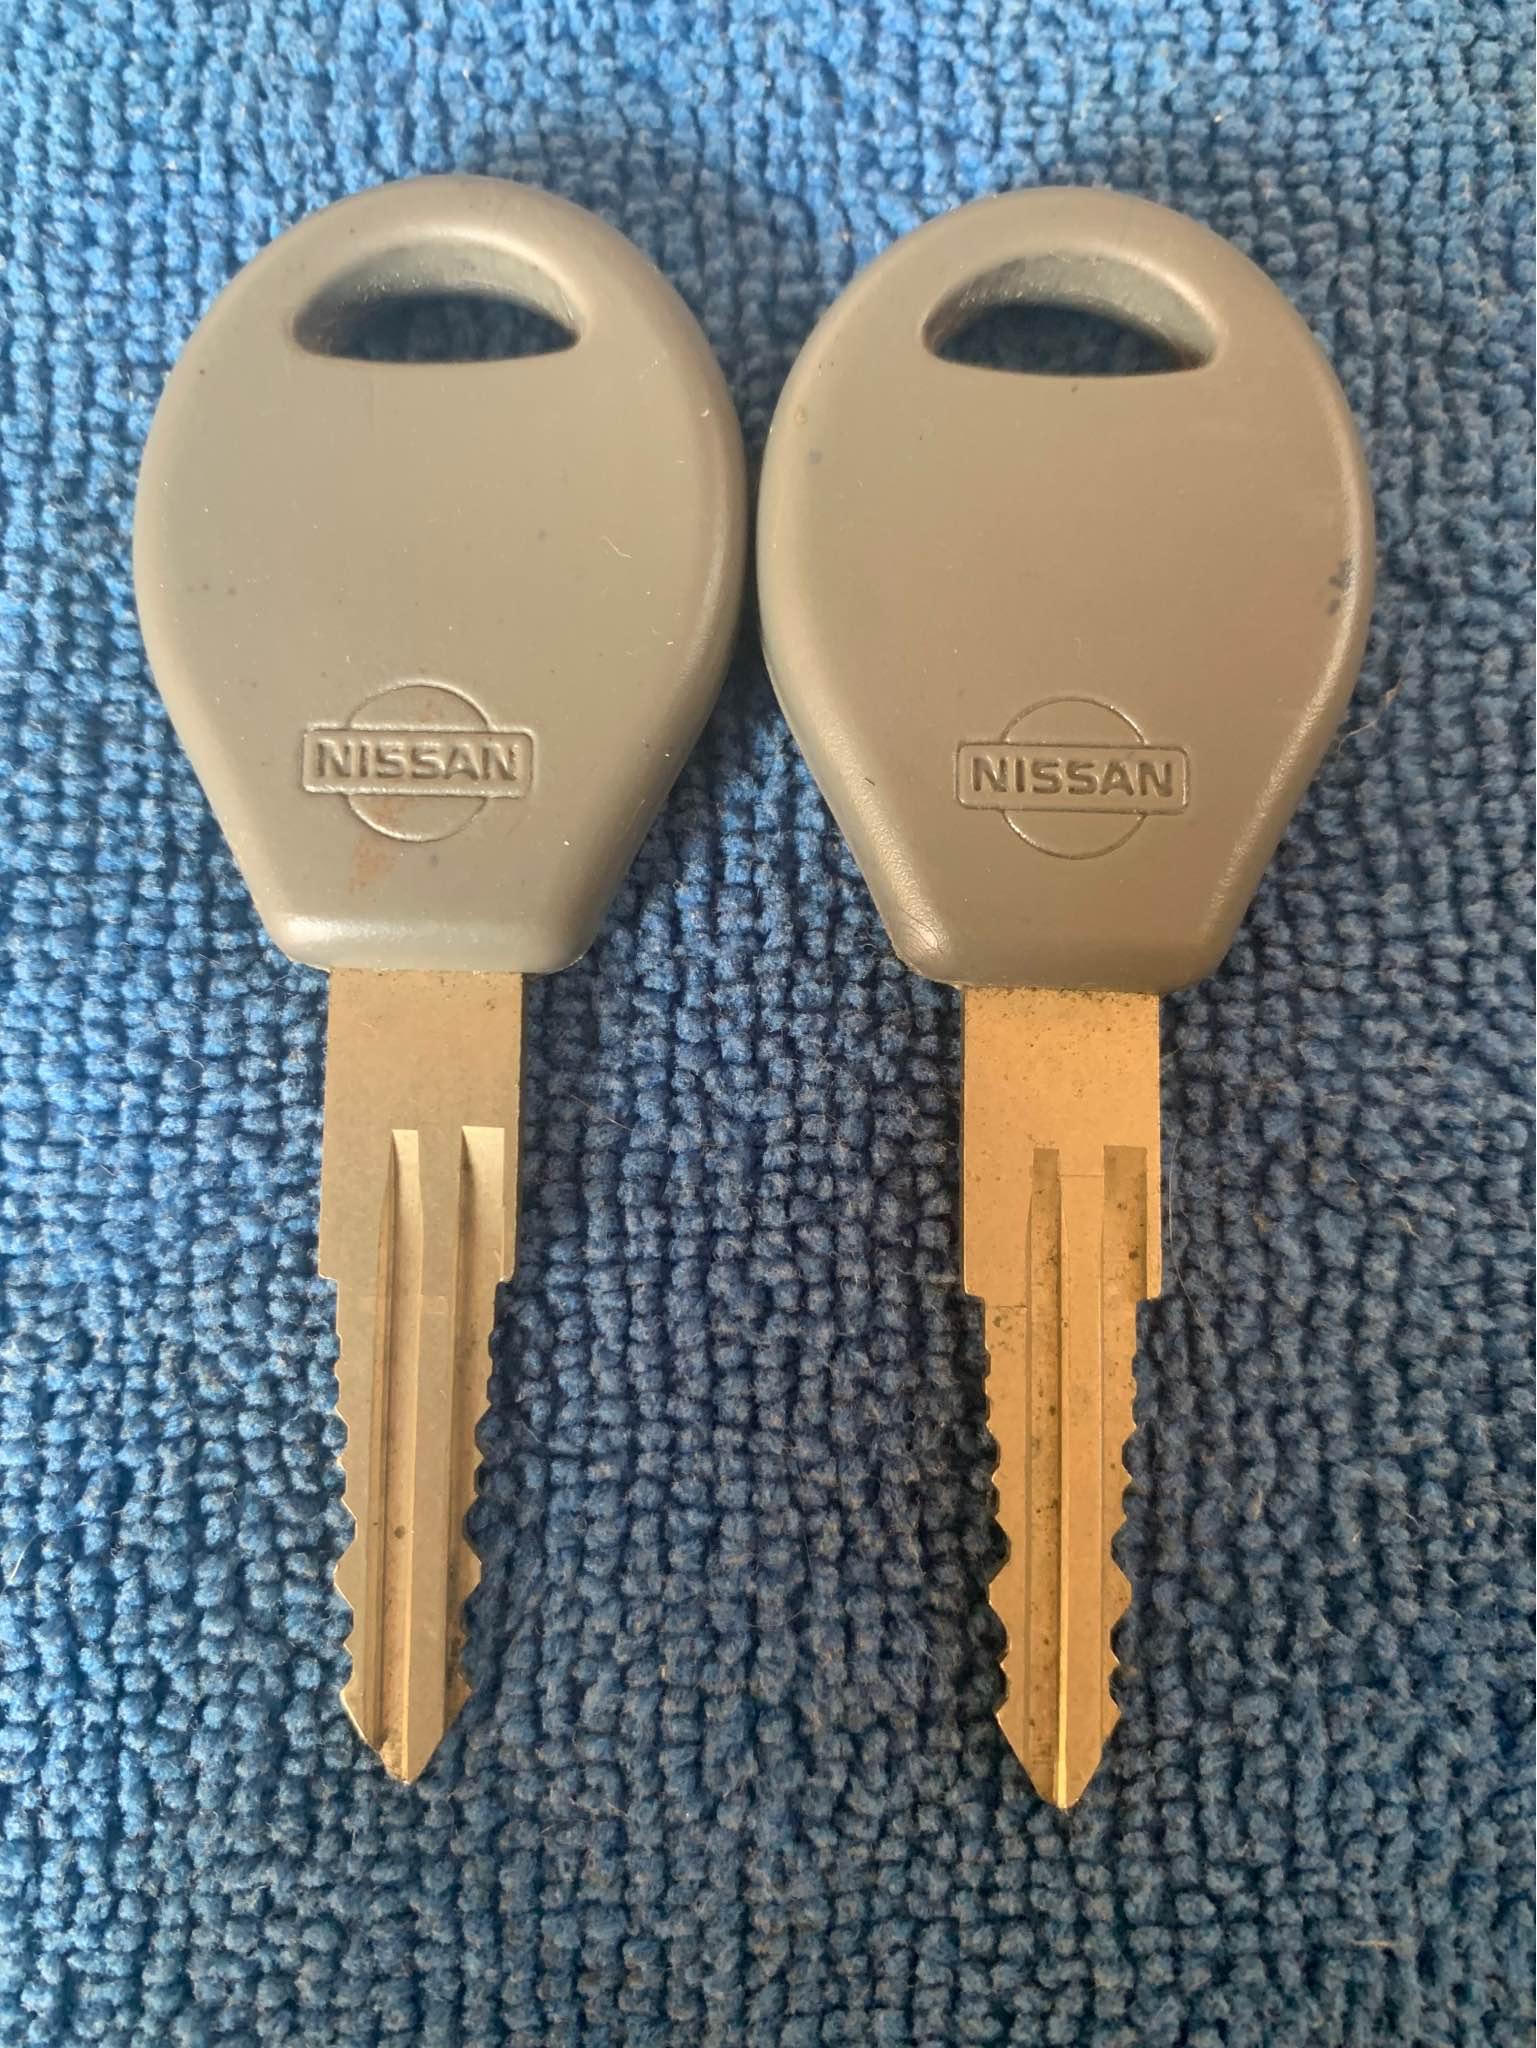 Atención cerrajeros tengo un par de llaves originales para automóvil Nissan Q150